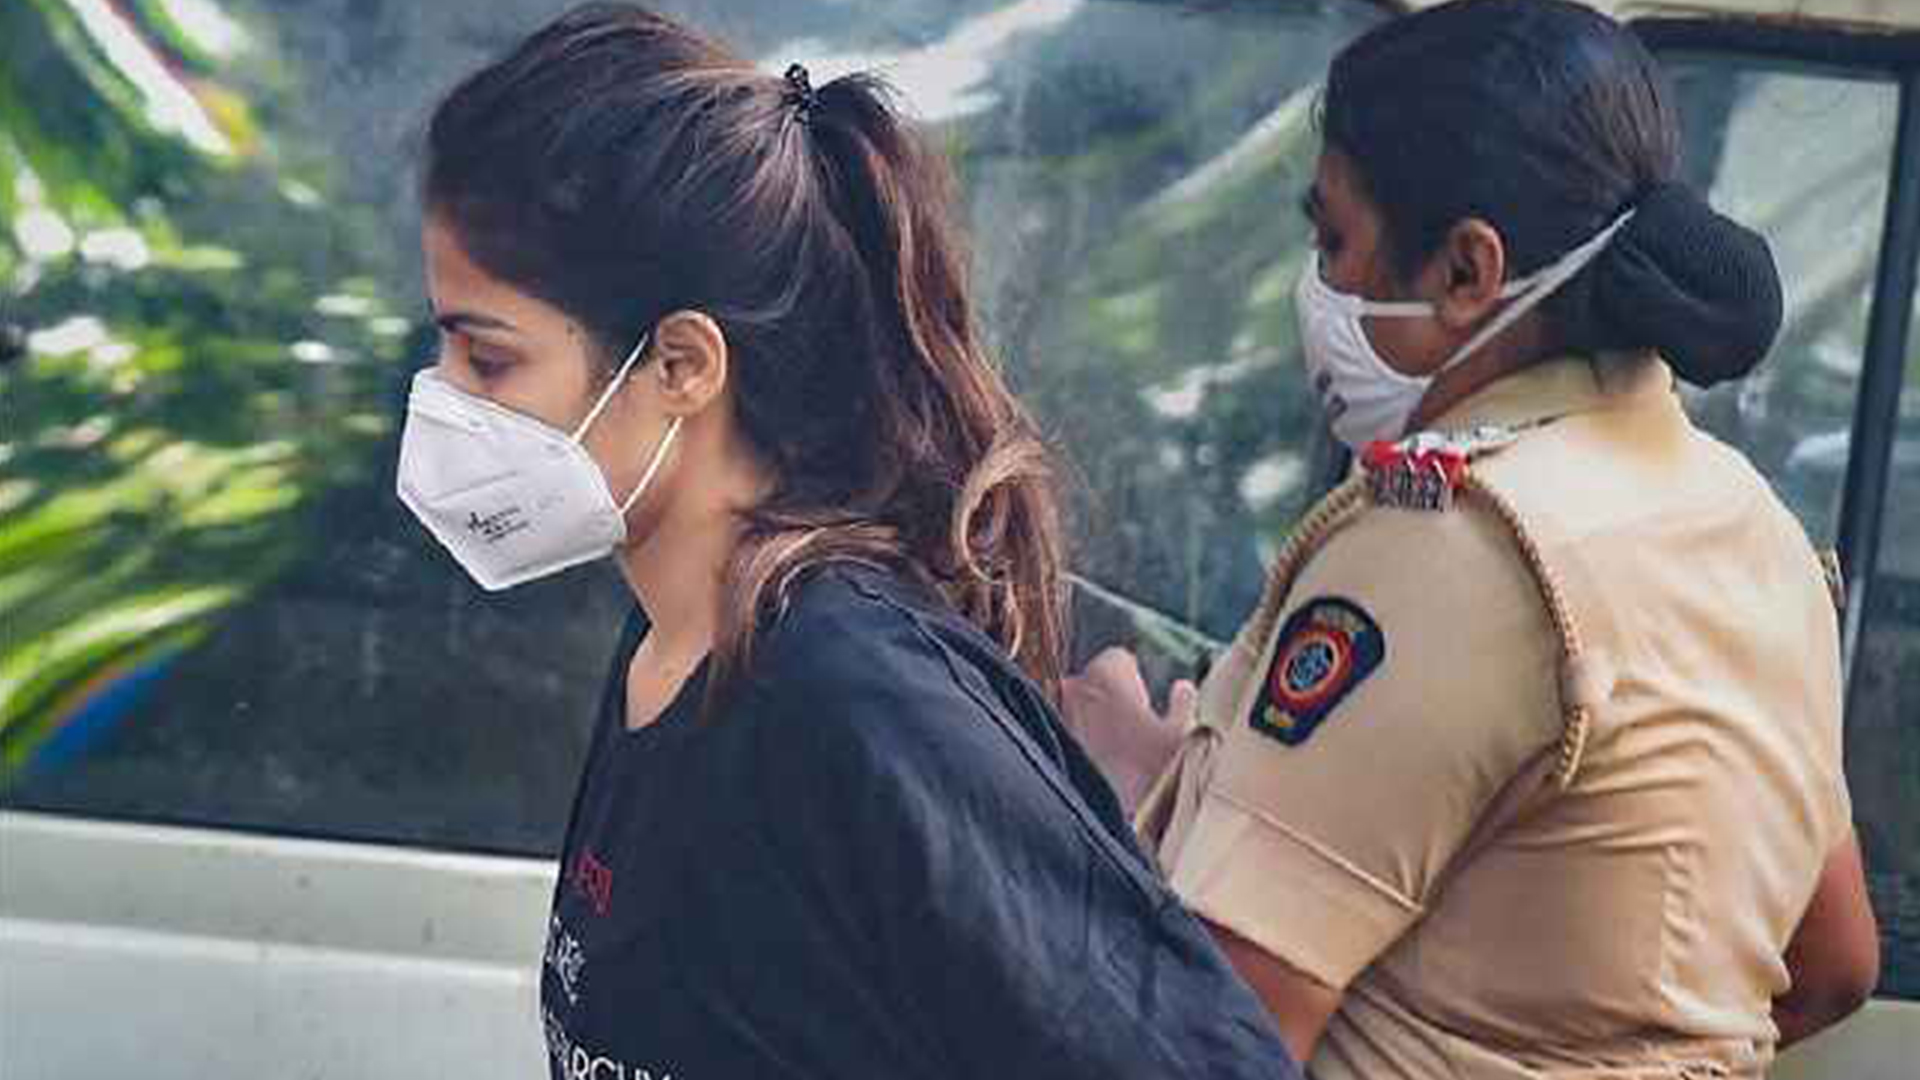 Actress Rhea Chakraborty arrested